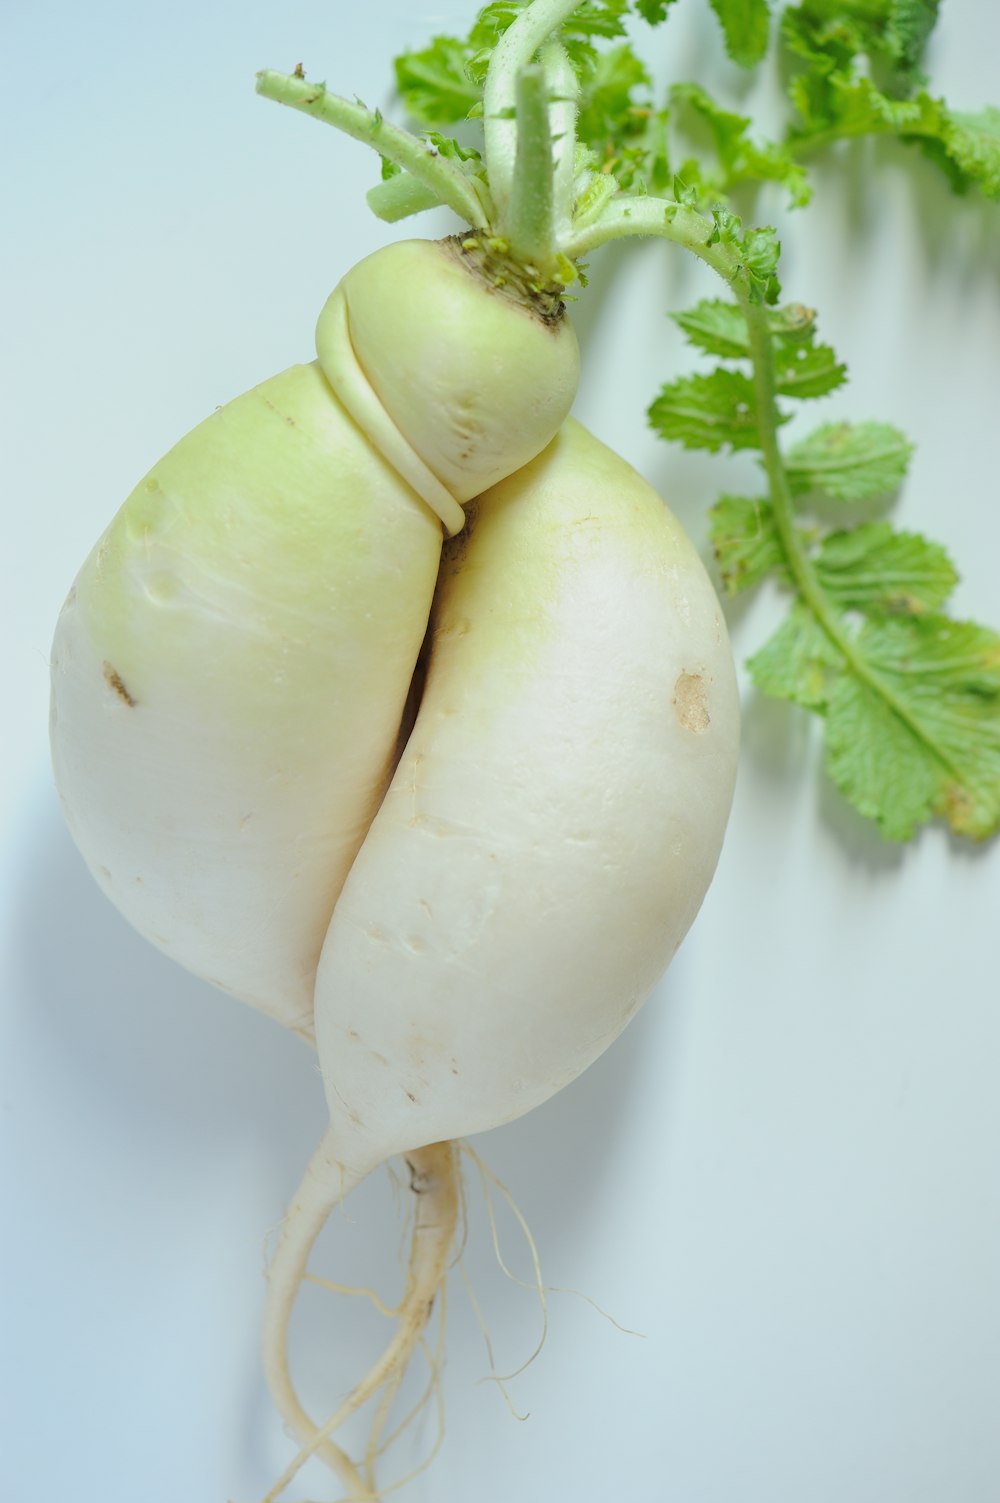 white garlic on white surface